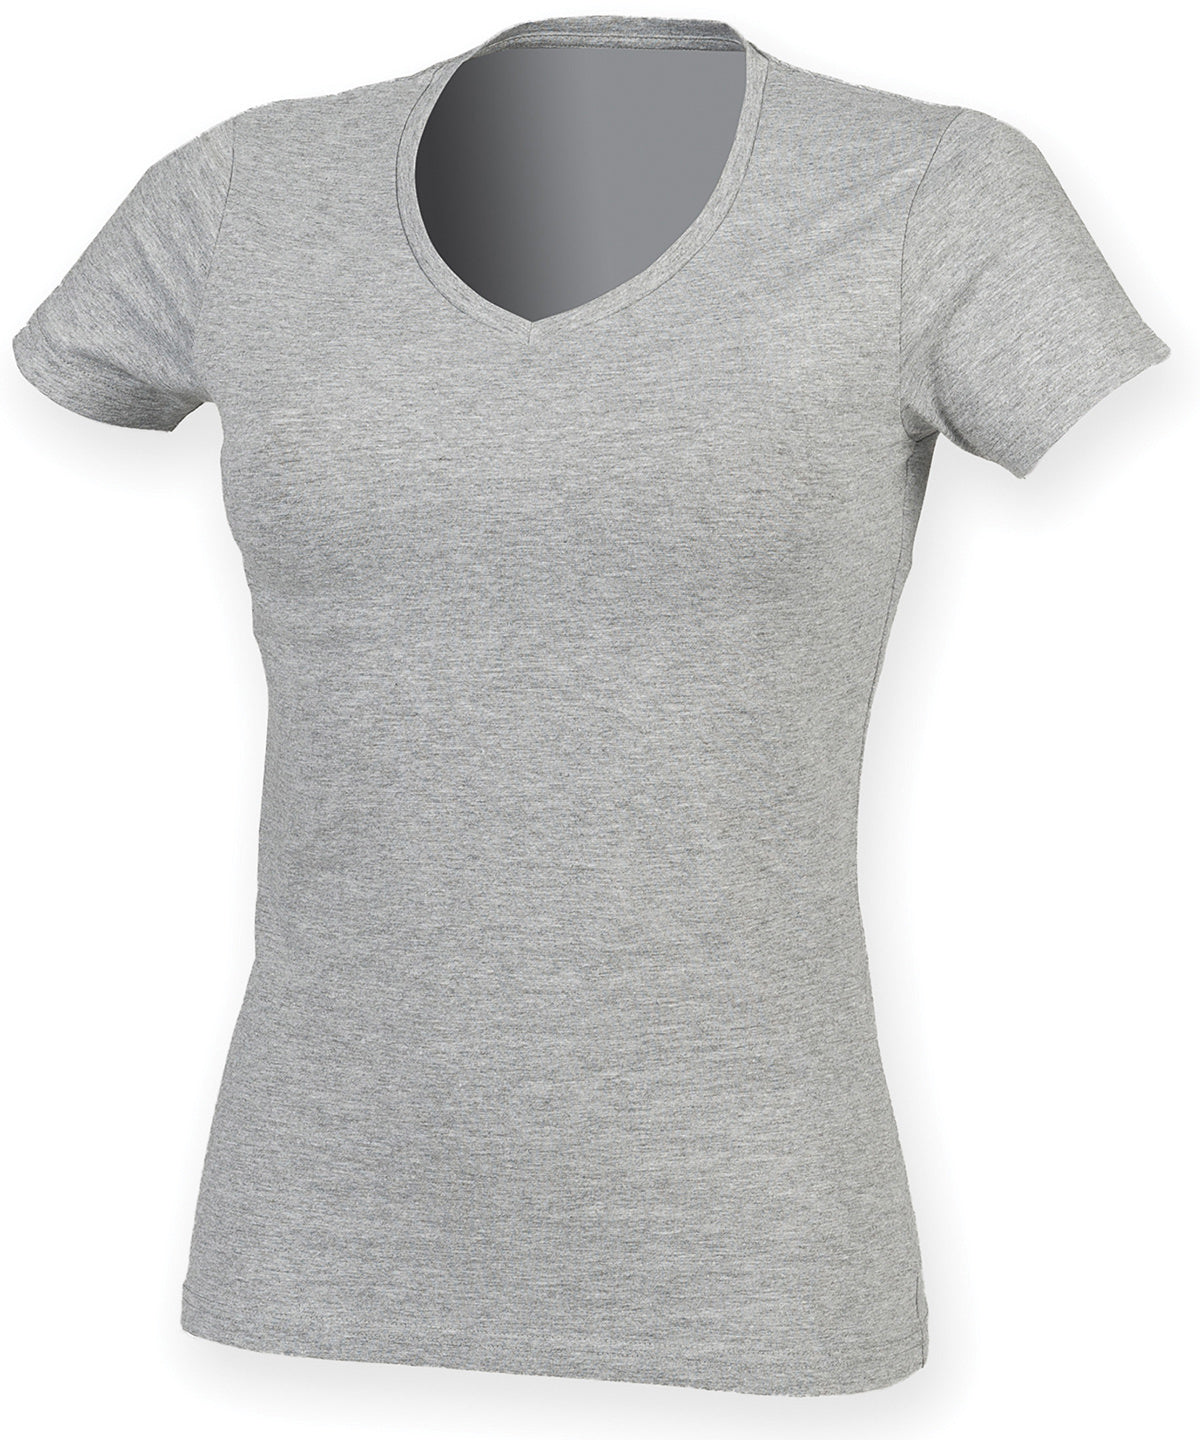 Stuttermabolir - Feel Good Women's Stretch V-neck T-shirt